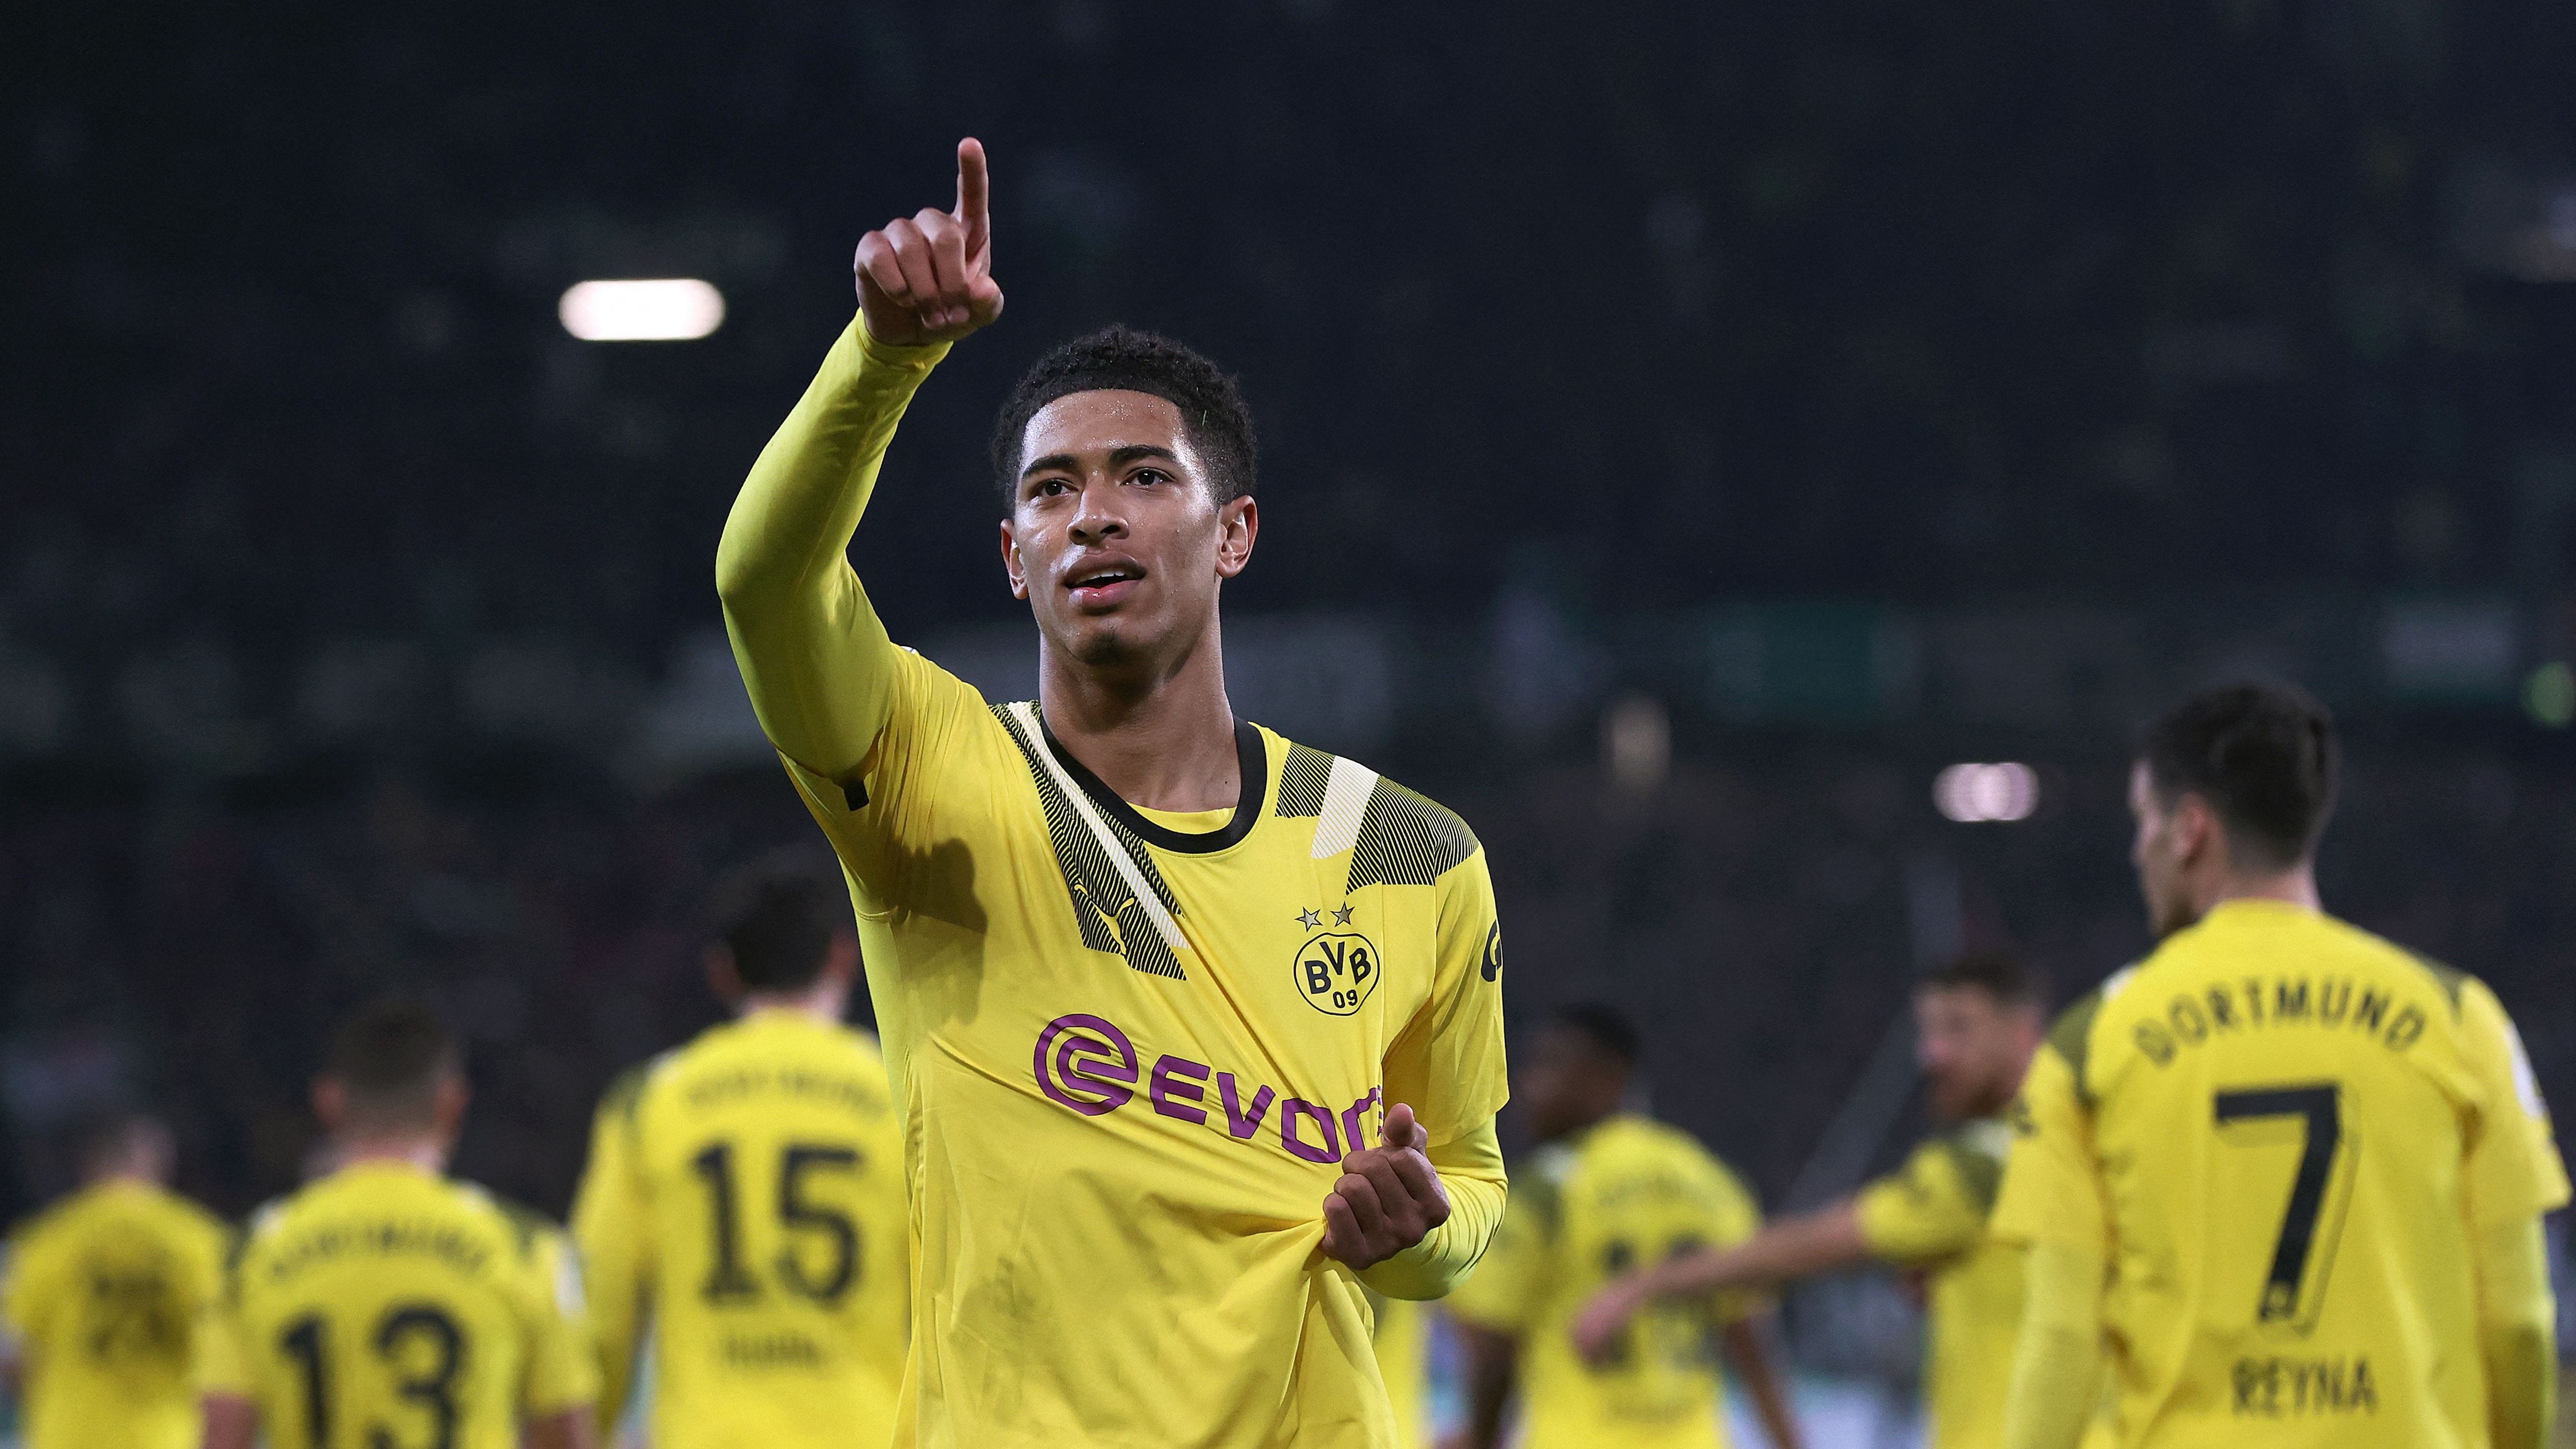 Borussia Dortmund goleia o Frankfurt e assume liderança da Bundesliga, futebol alemão